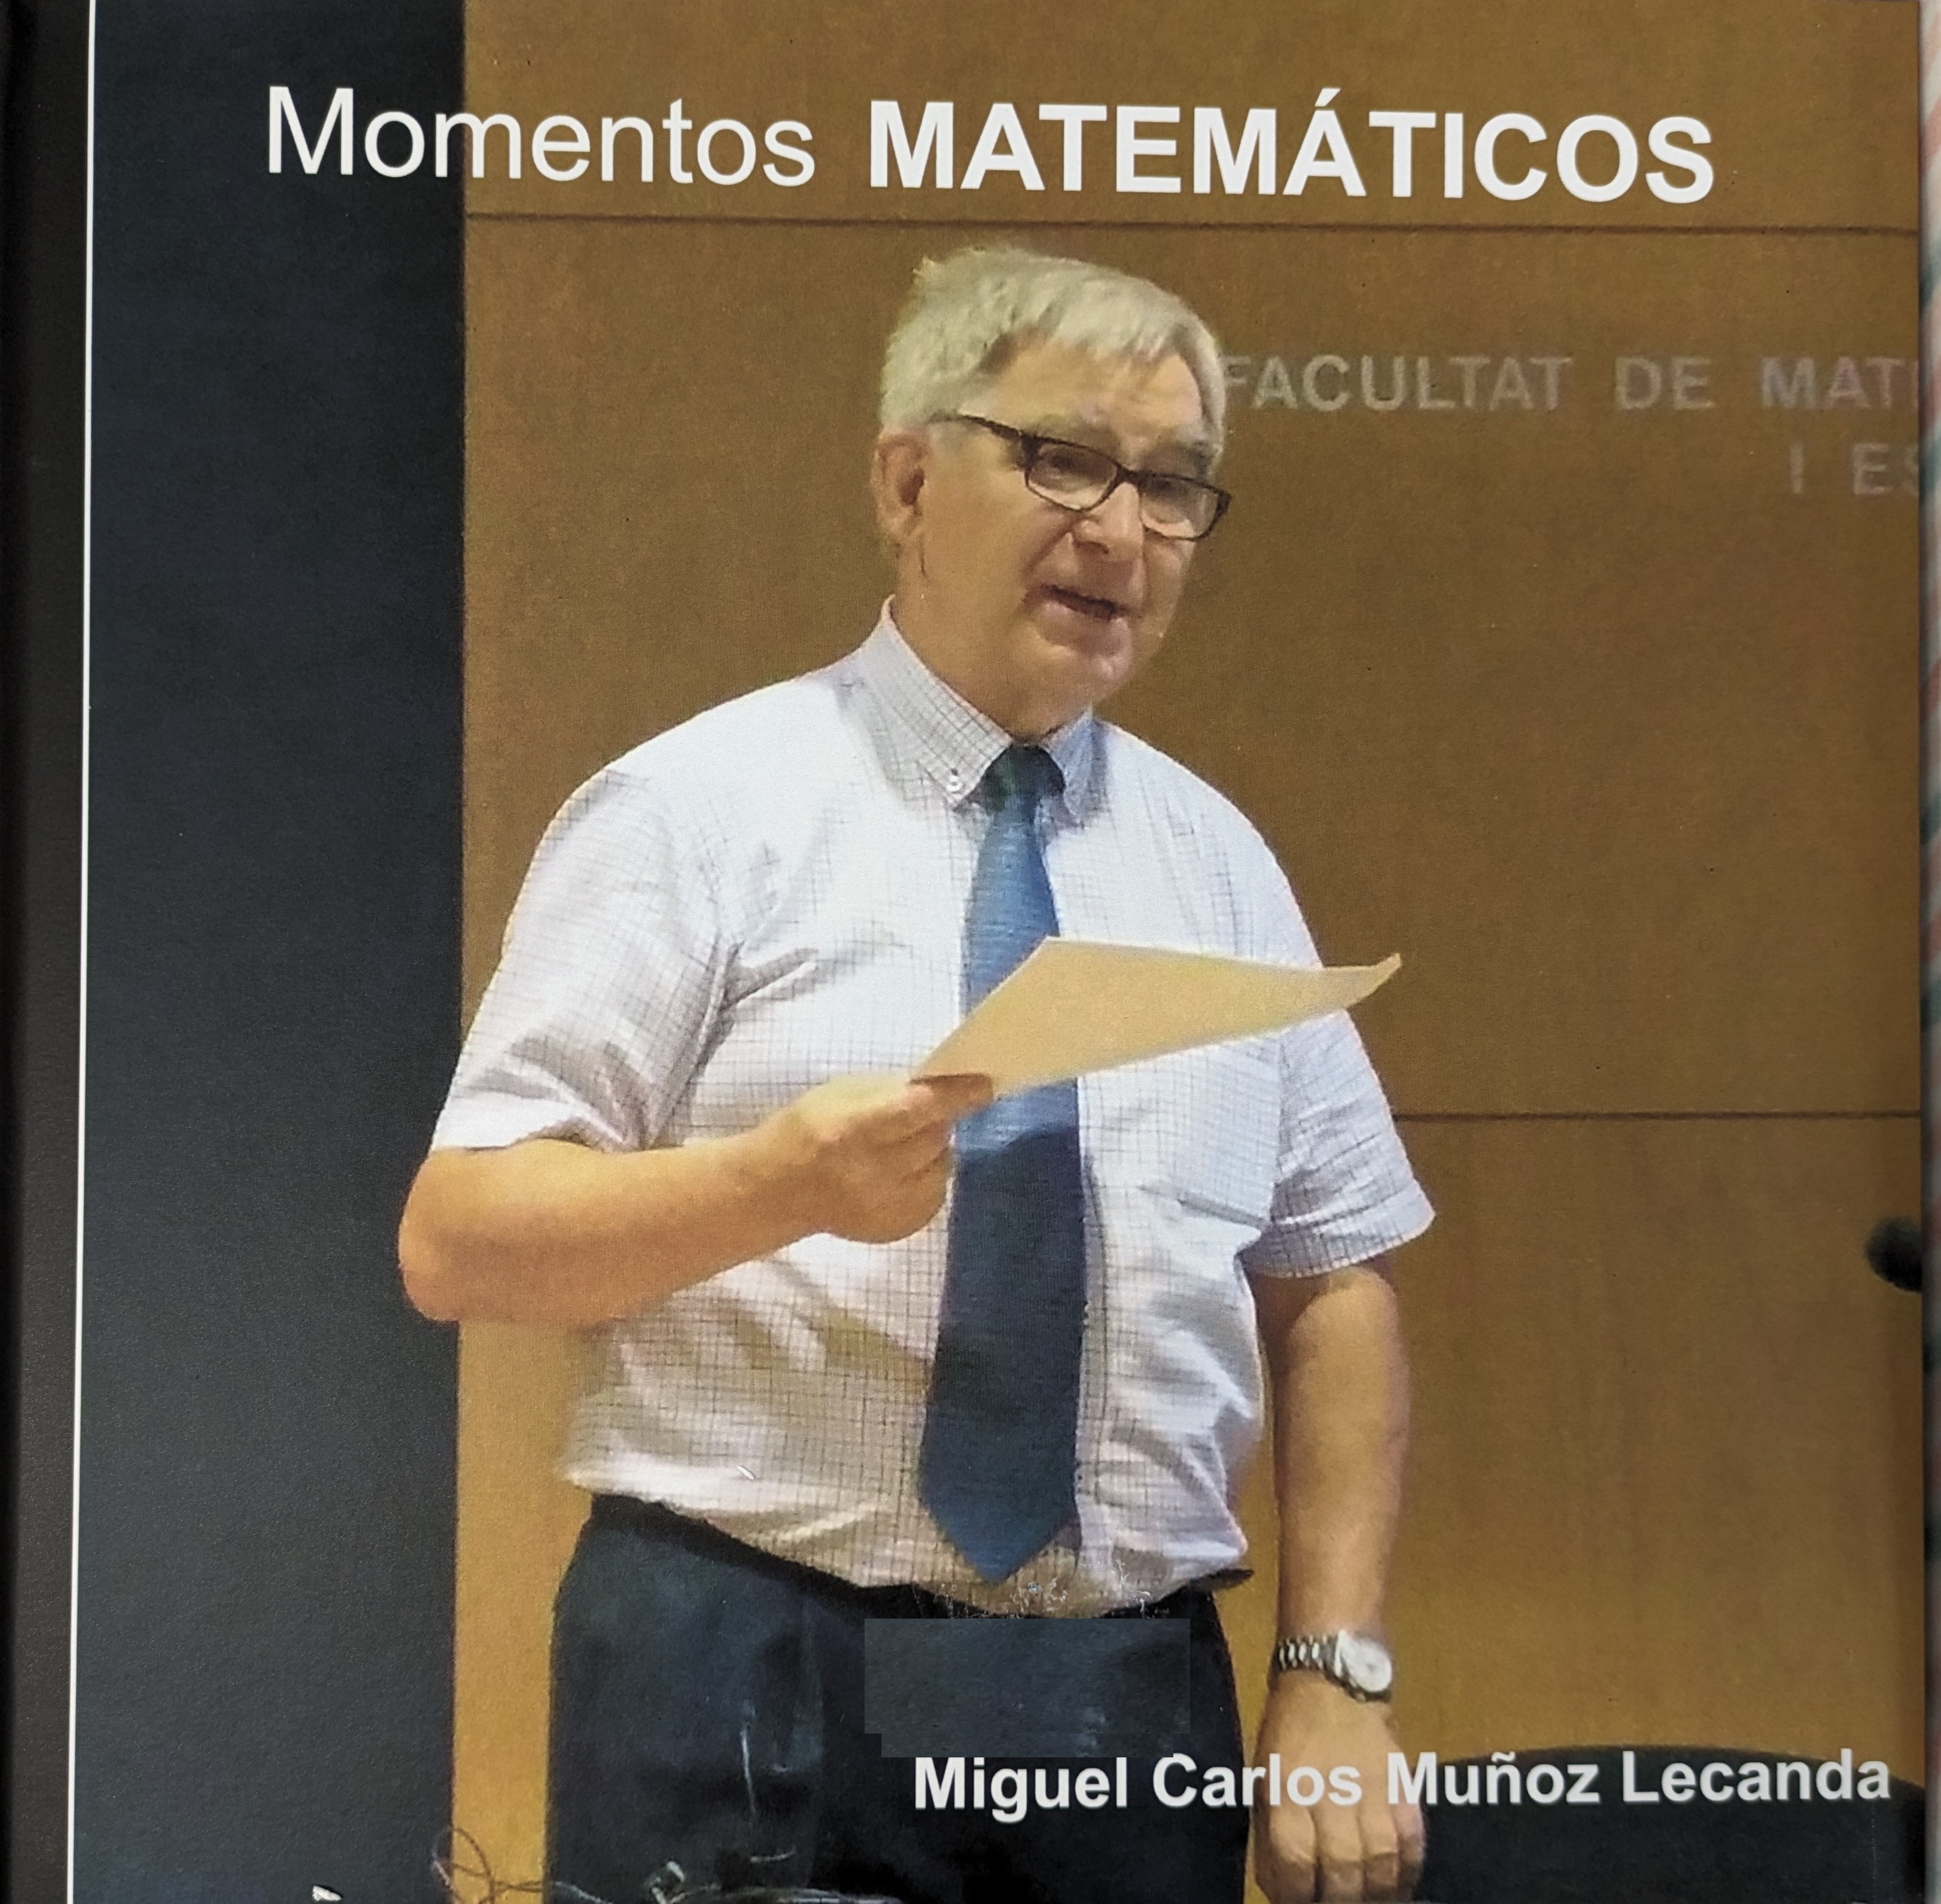 Momentos matemáticos : Miguel Carlos Muñoz Lecanda